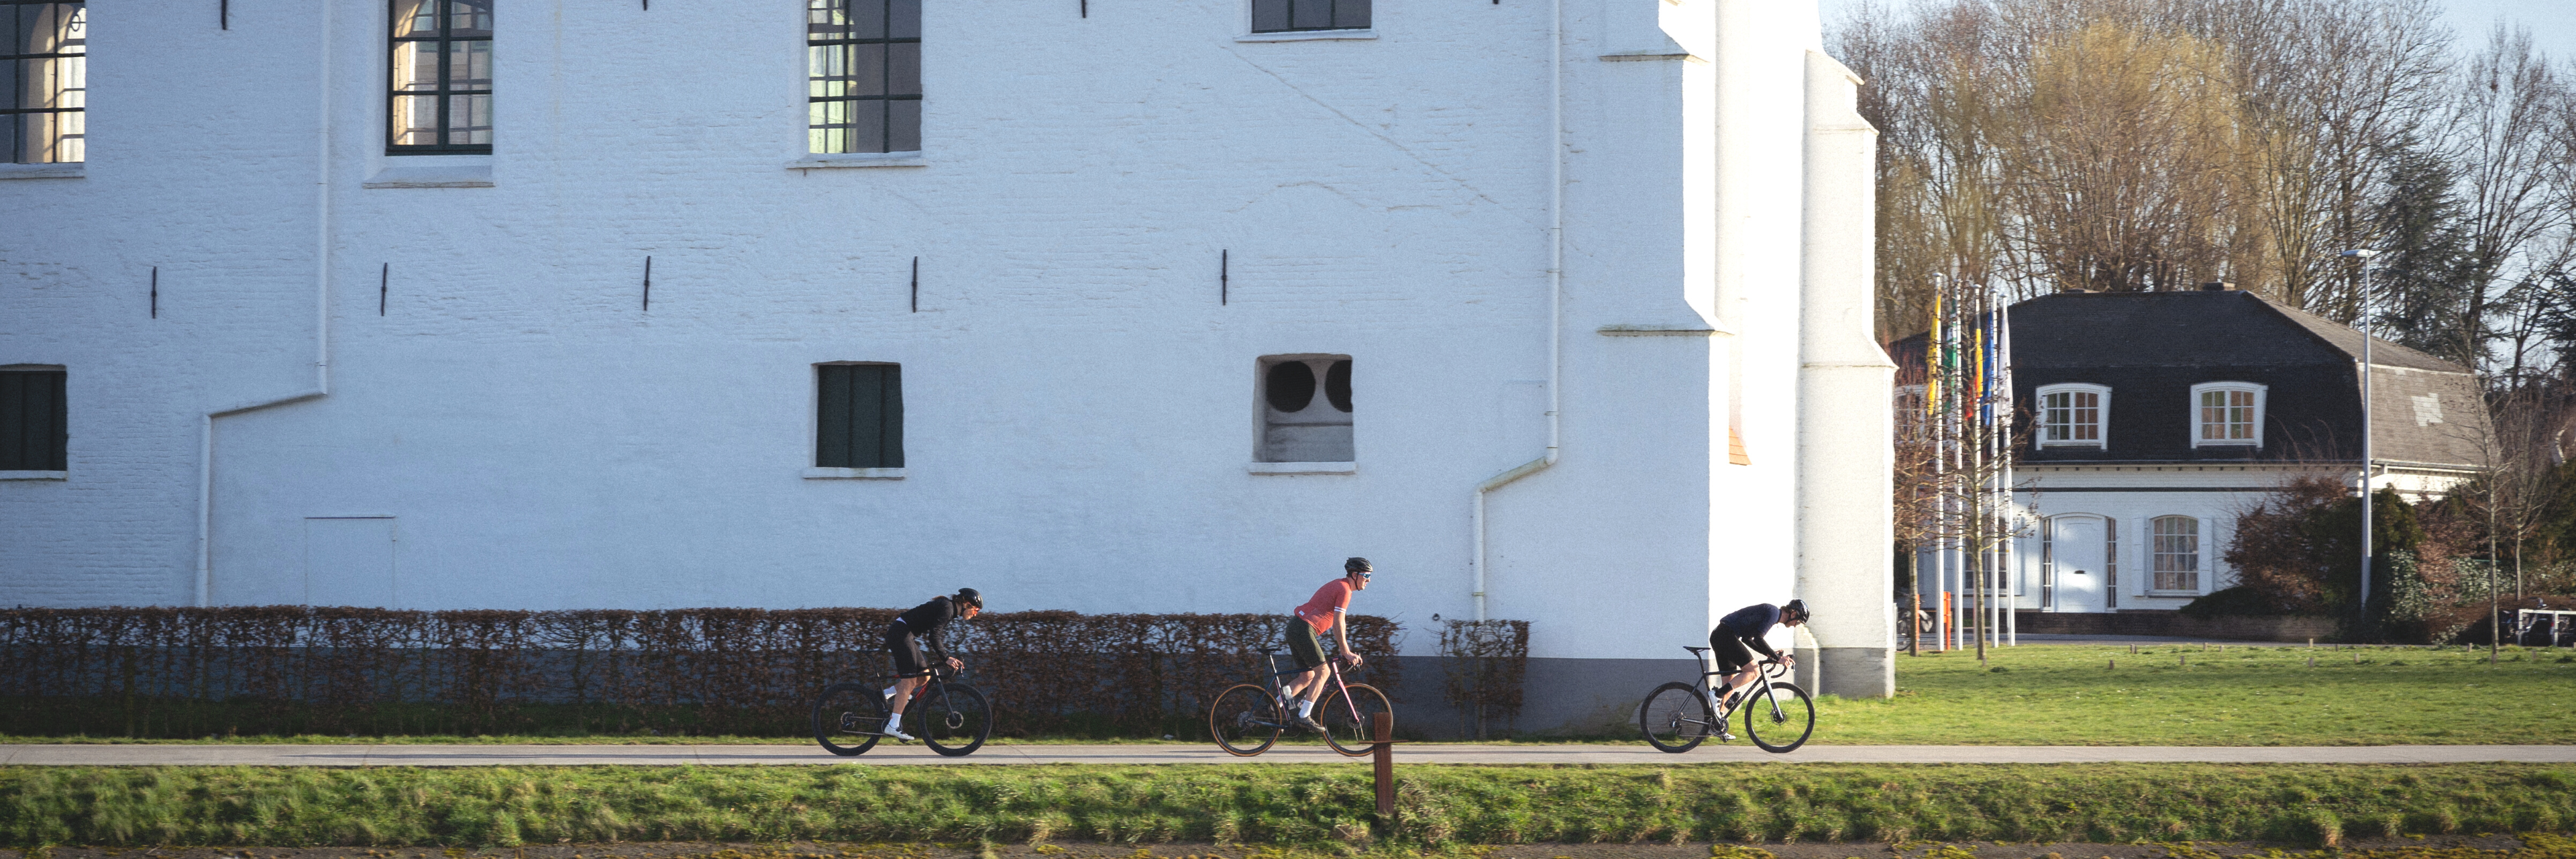 3 fietsers fietsen op een rijtje voorbij de nieuwe wielerhub in oudenaarde